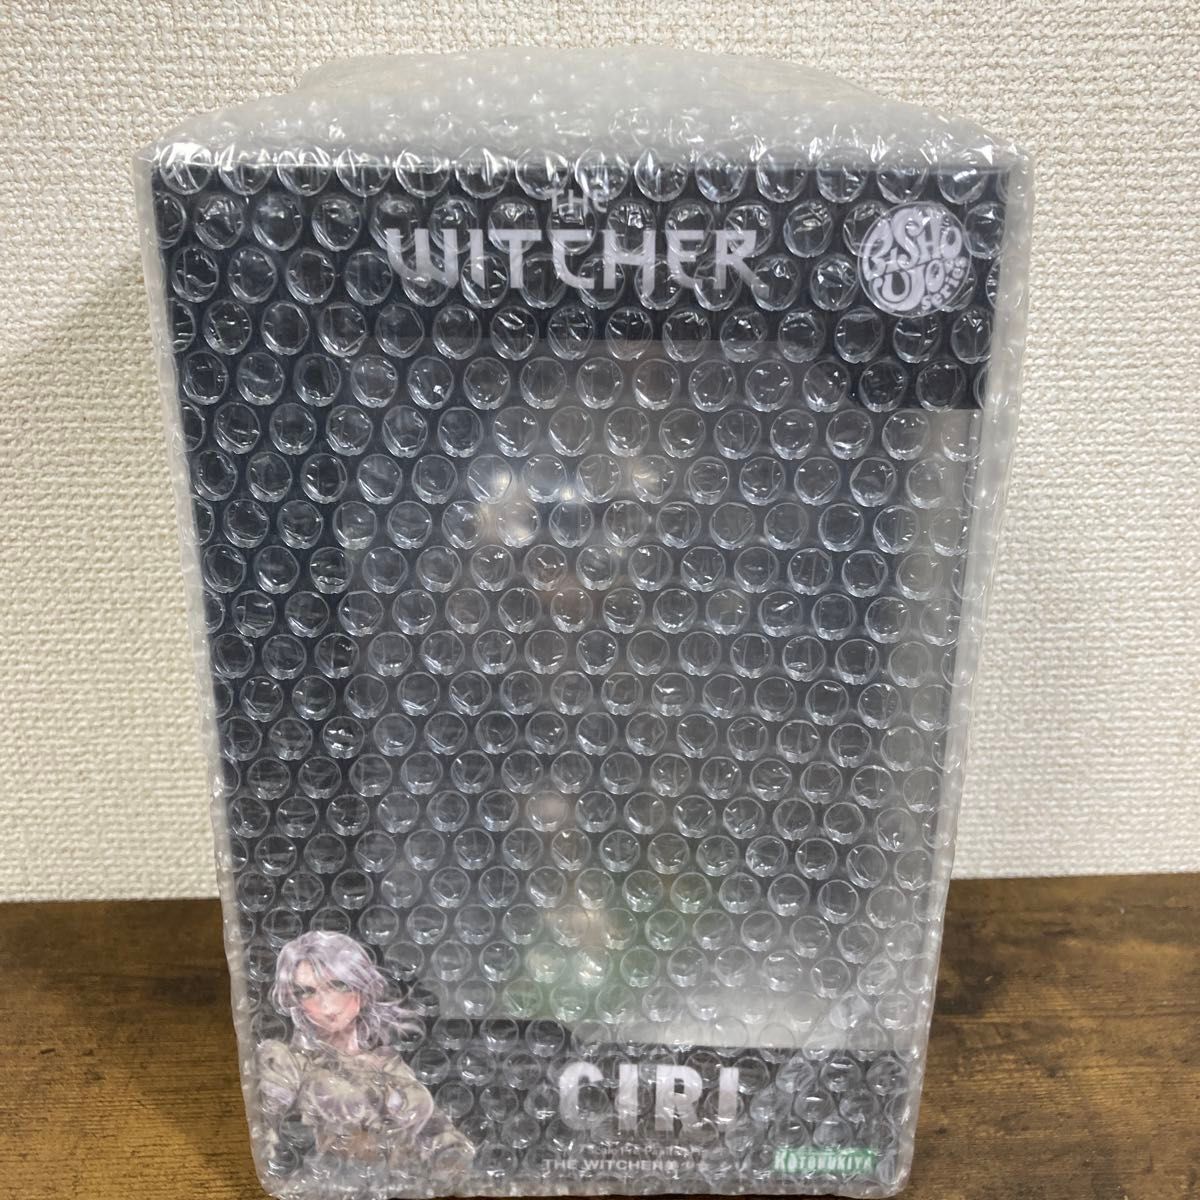 ウィッチャー THE WITCHER美少女 シリ 1/7スケール PVC製 塗装済み完成品 フィギュア CIRI コトブキヤ